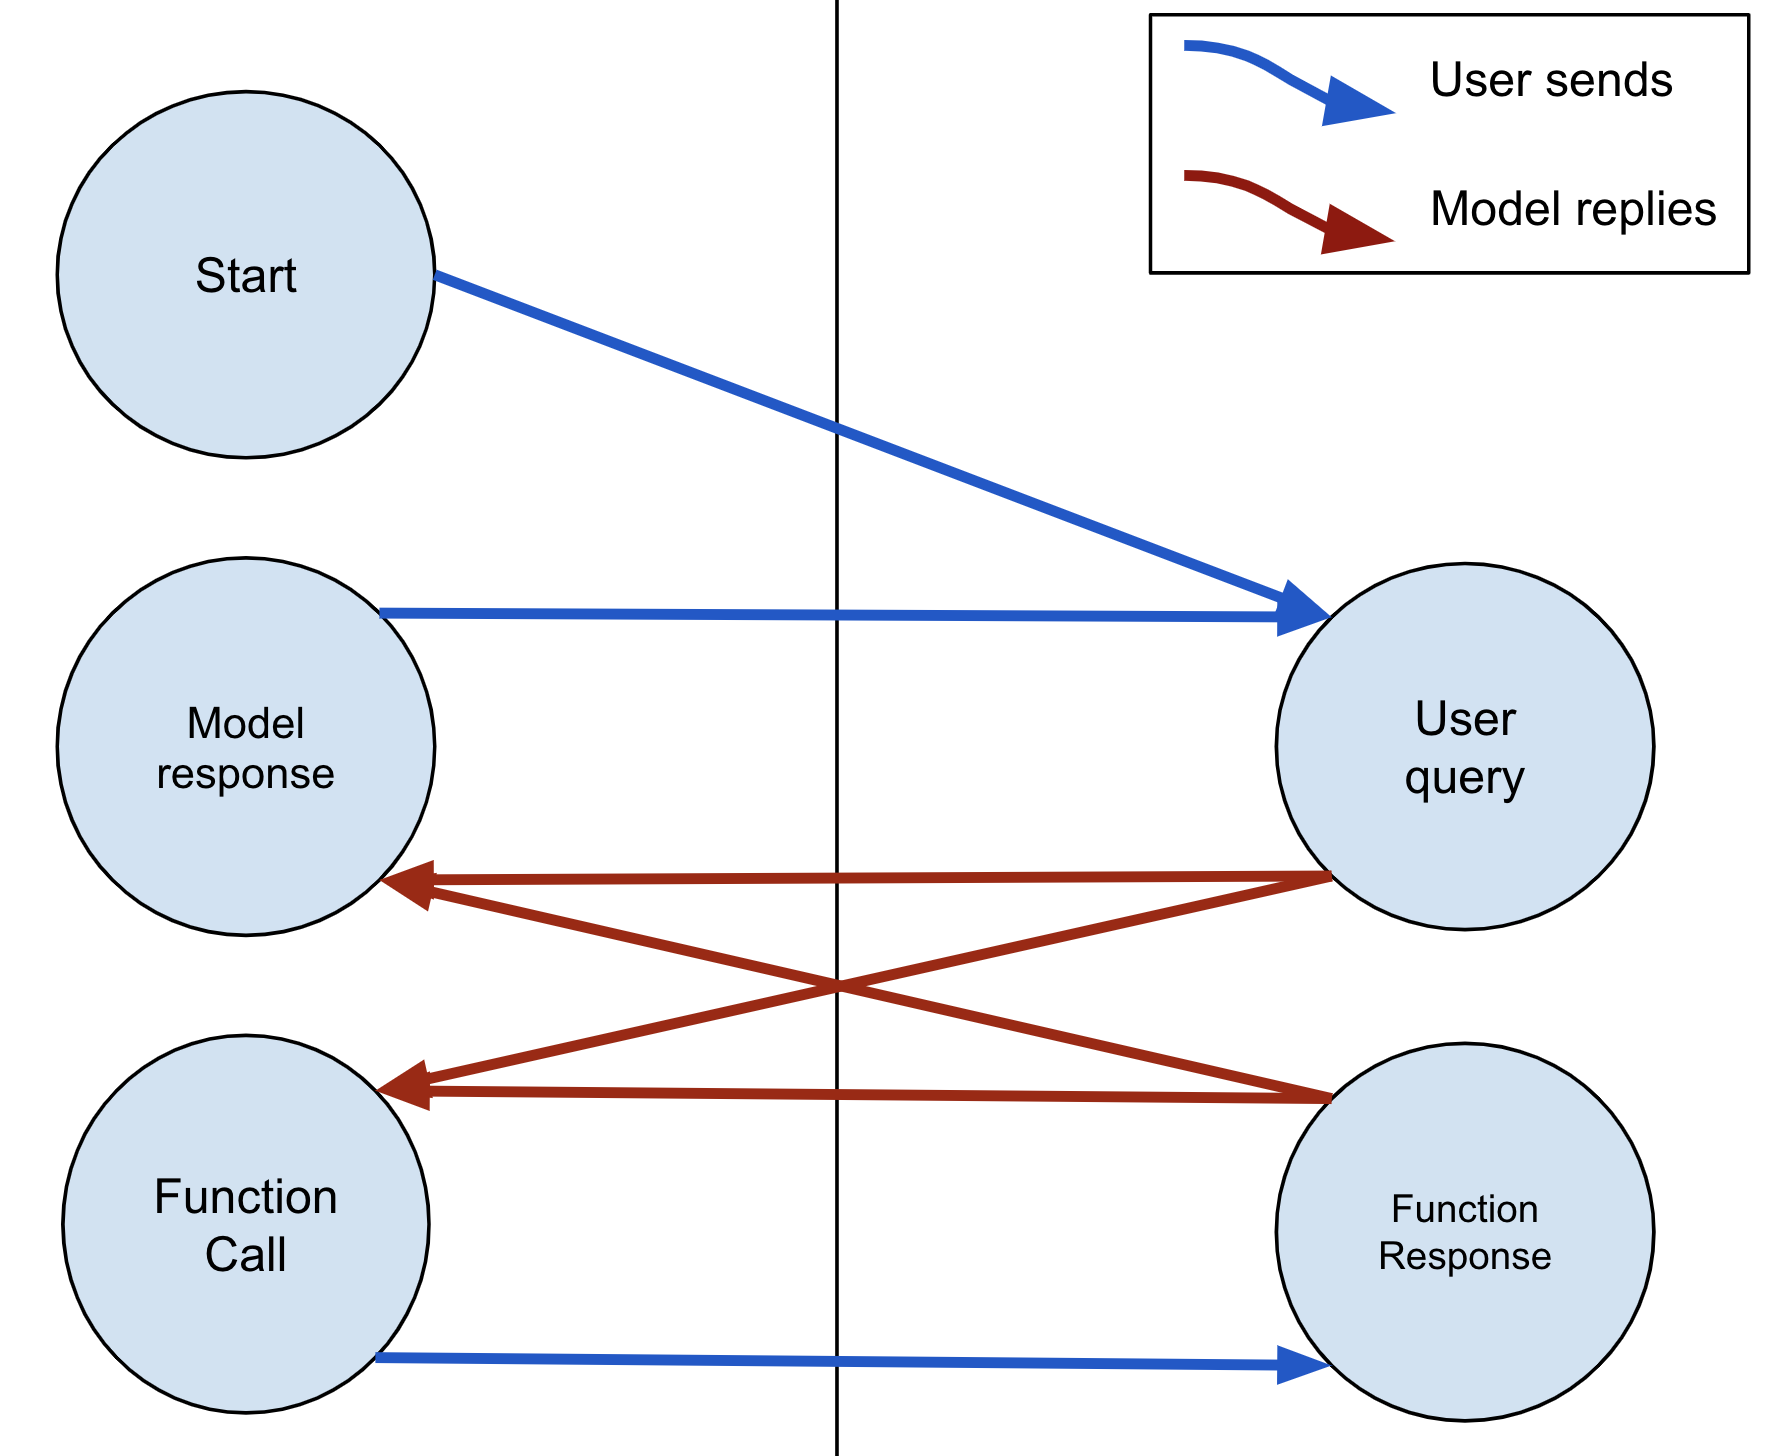 O modelo sempre pode responder com texto ou uma FunctionCall. Se o modelo enviar uma FunctionCall, o usuário deverá responder com um FunctionResponse.